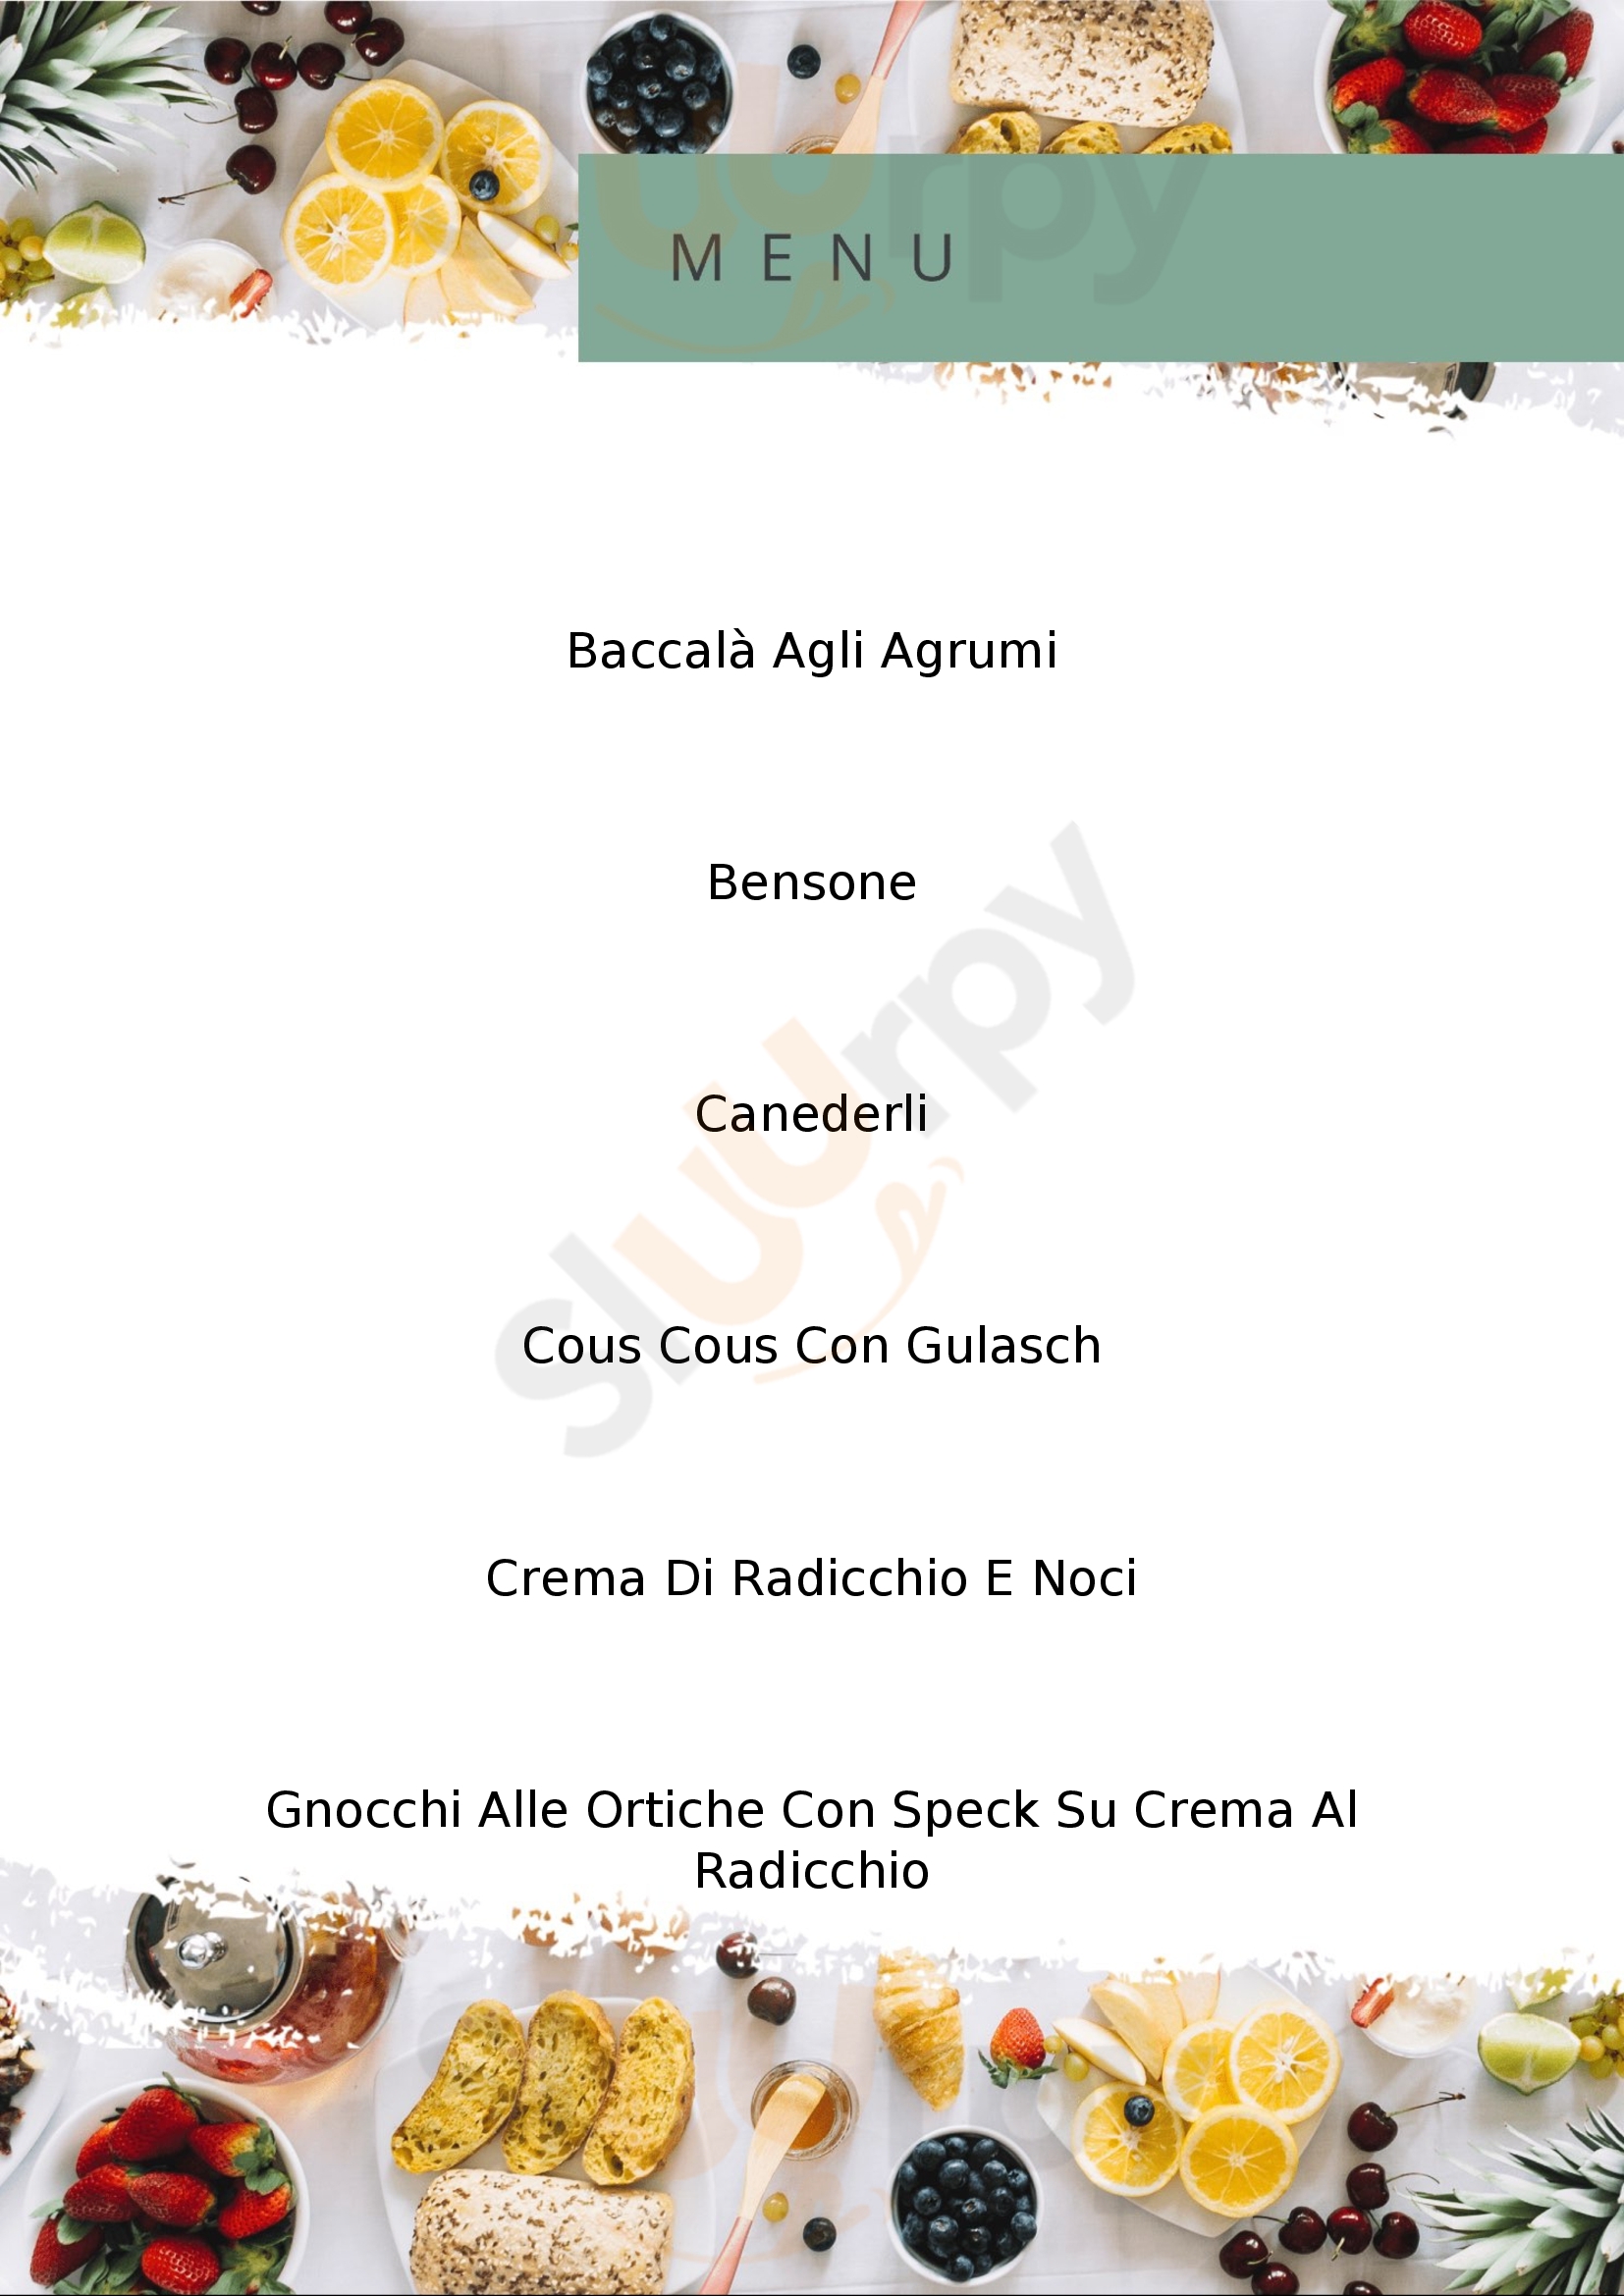 Food Club Cafe Modena menù 1 pagina